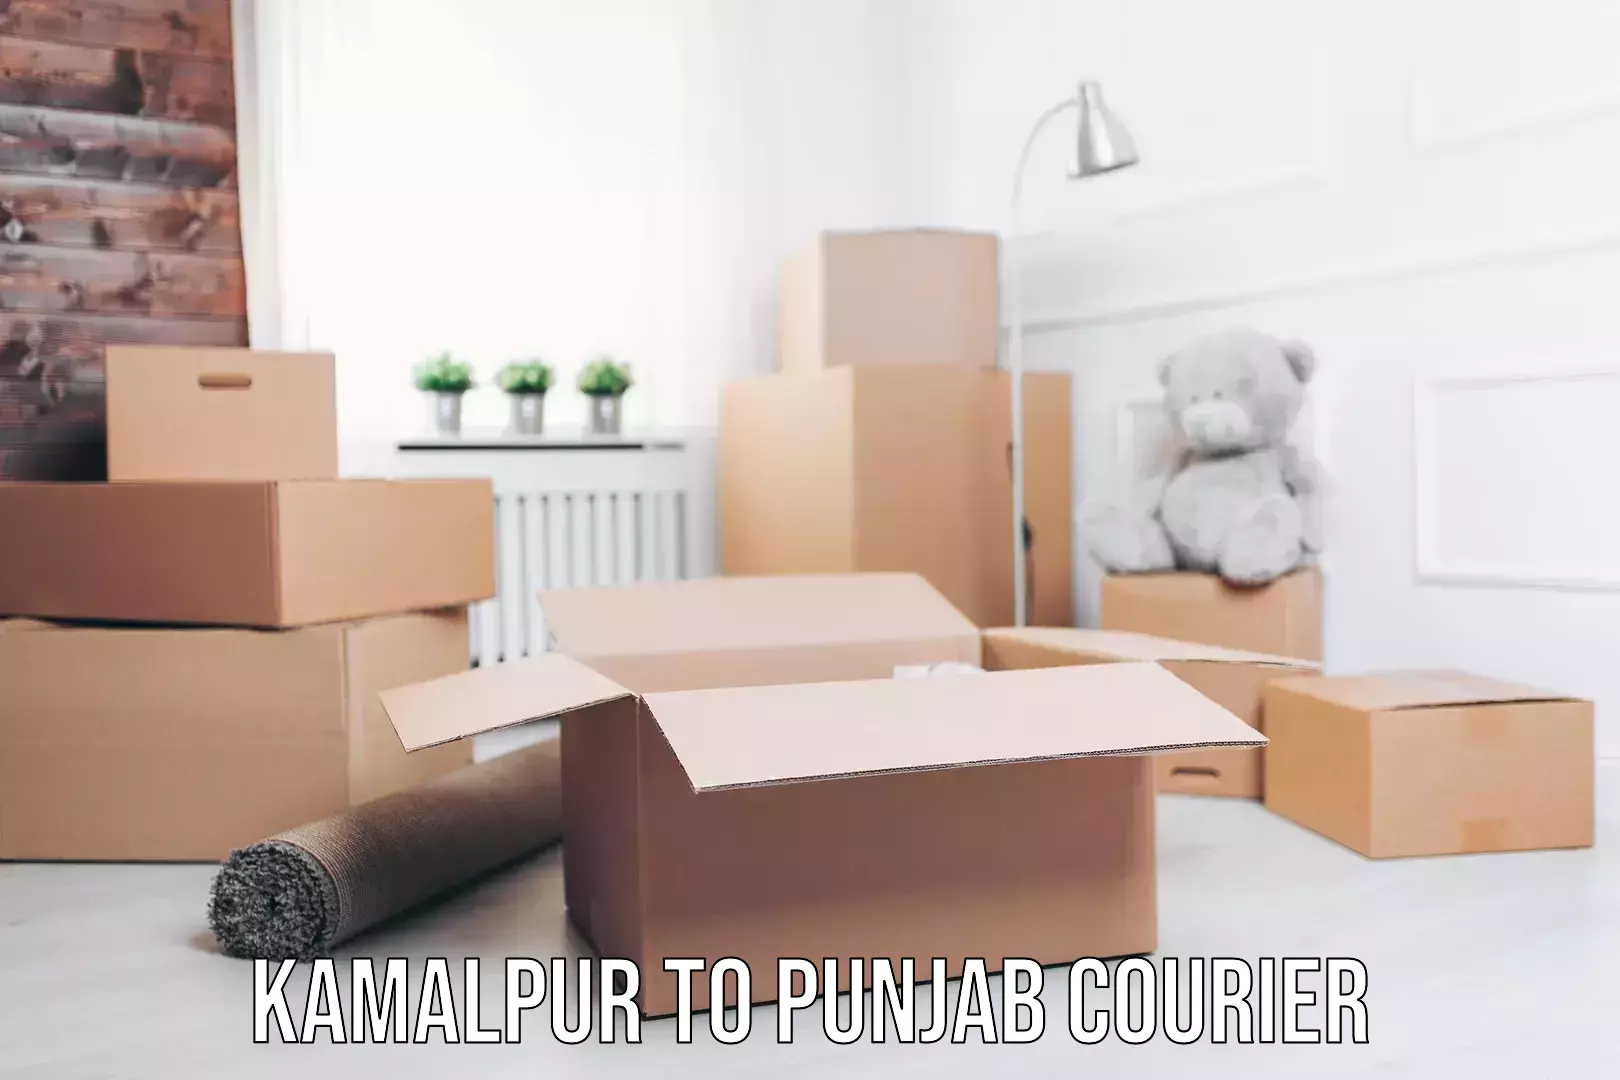 Efficient parcel service Kamalpur to Punjab